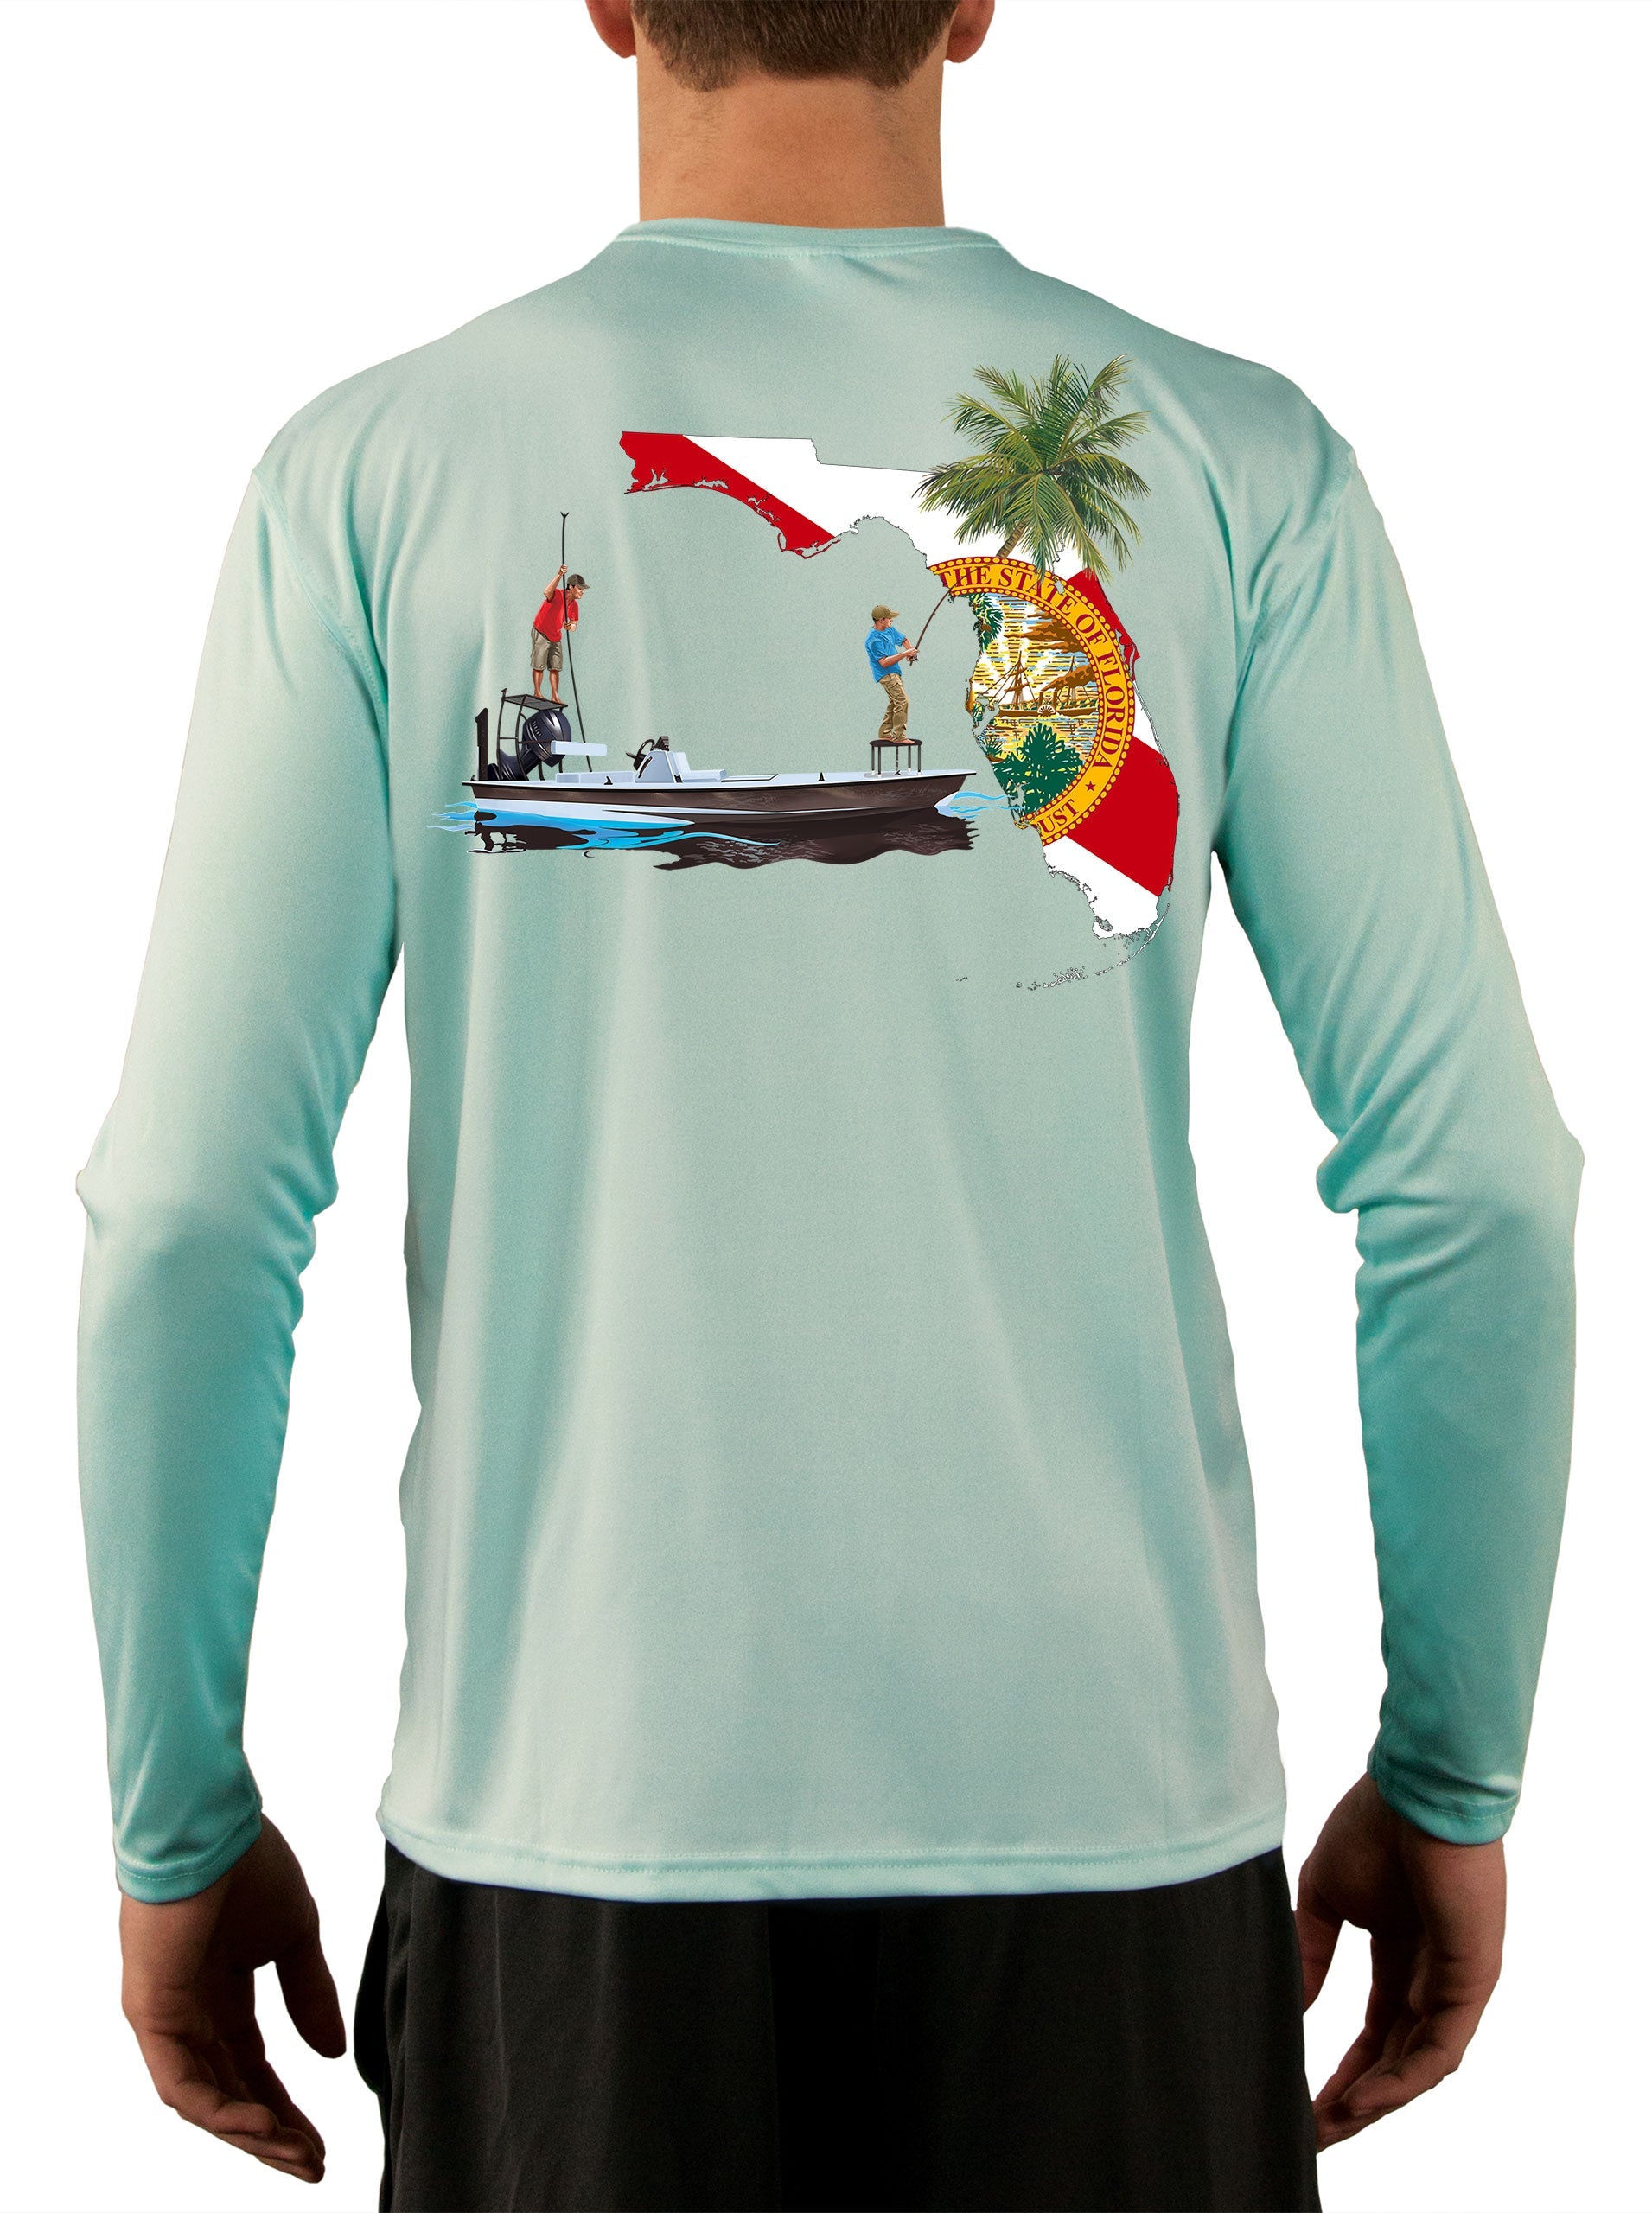 Shopping  Fishing t shirts, Fishing shirts, Shirt designs